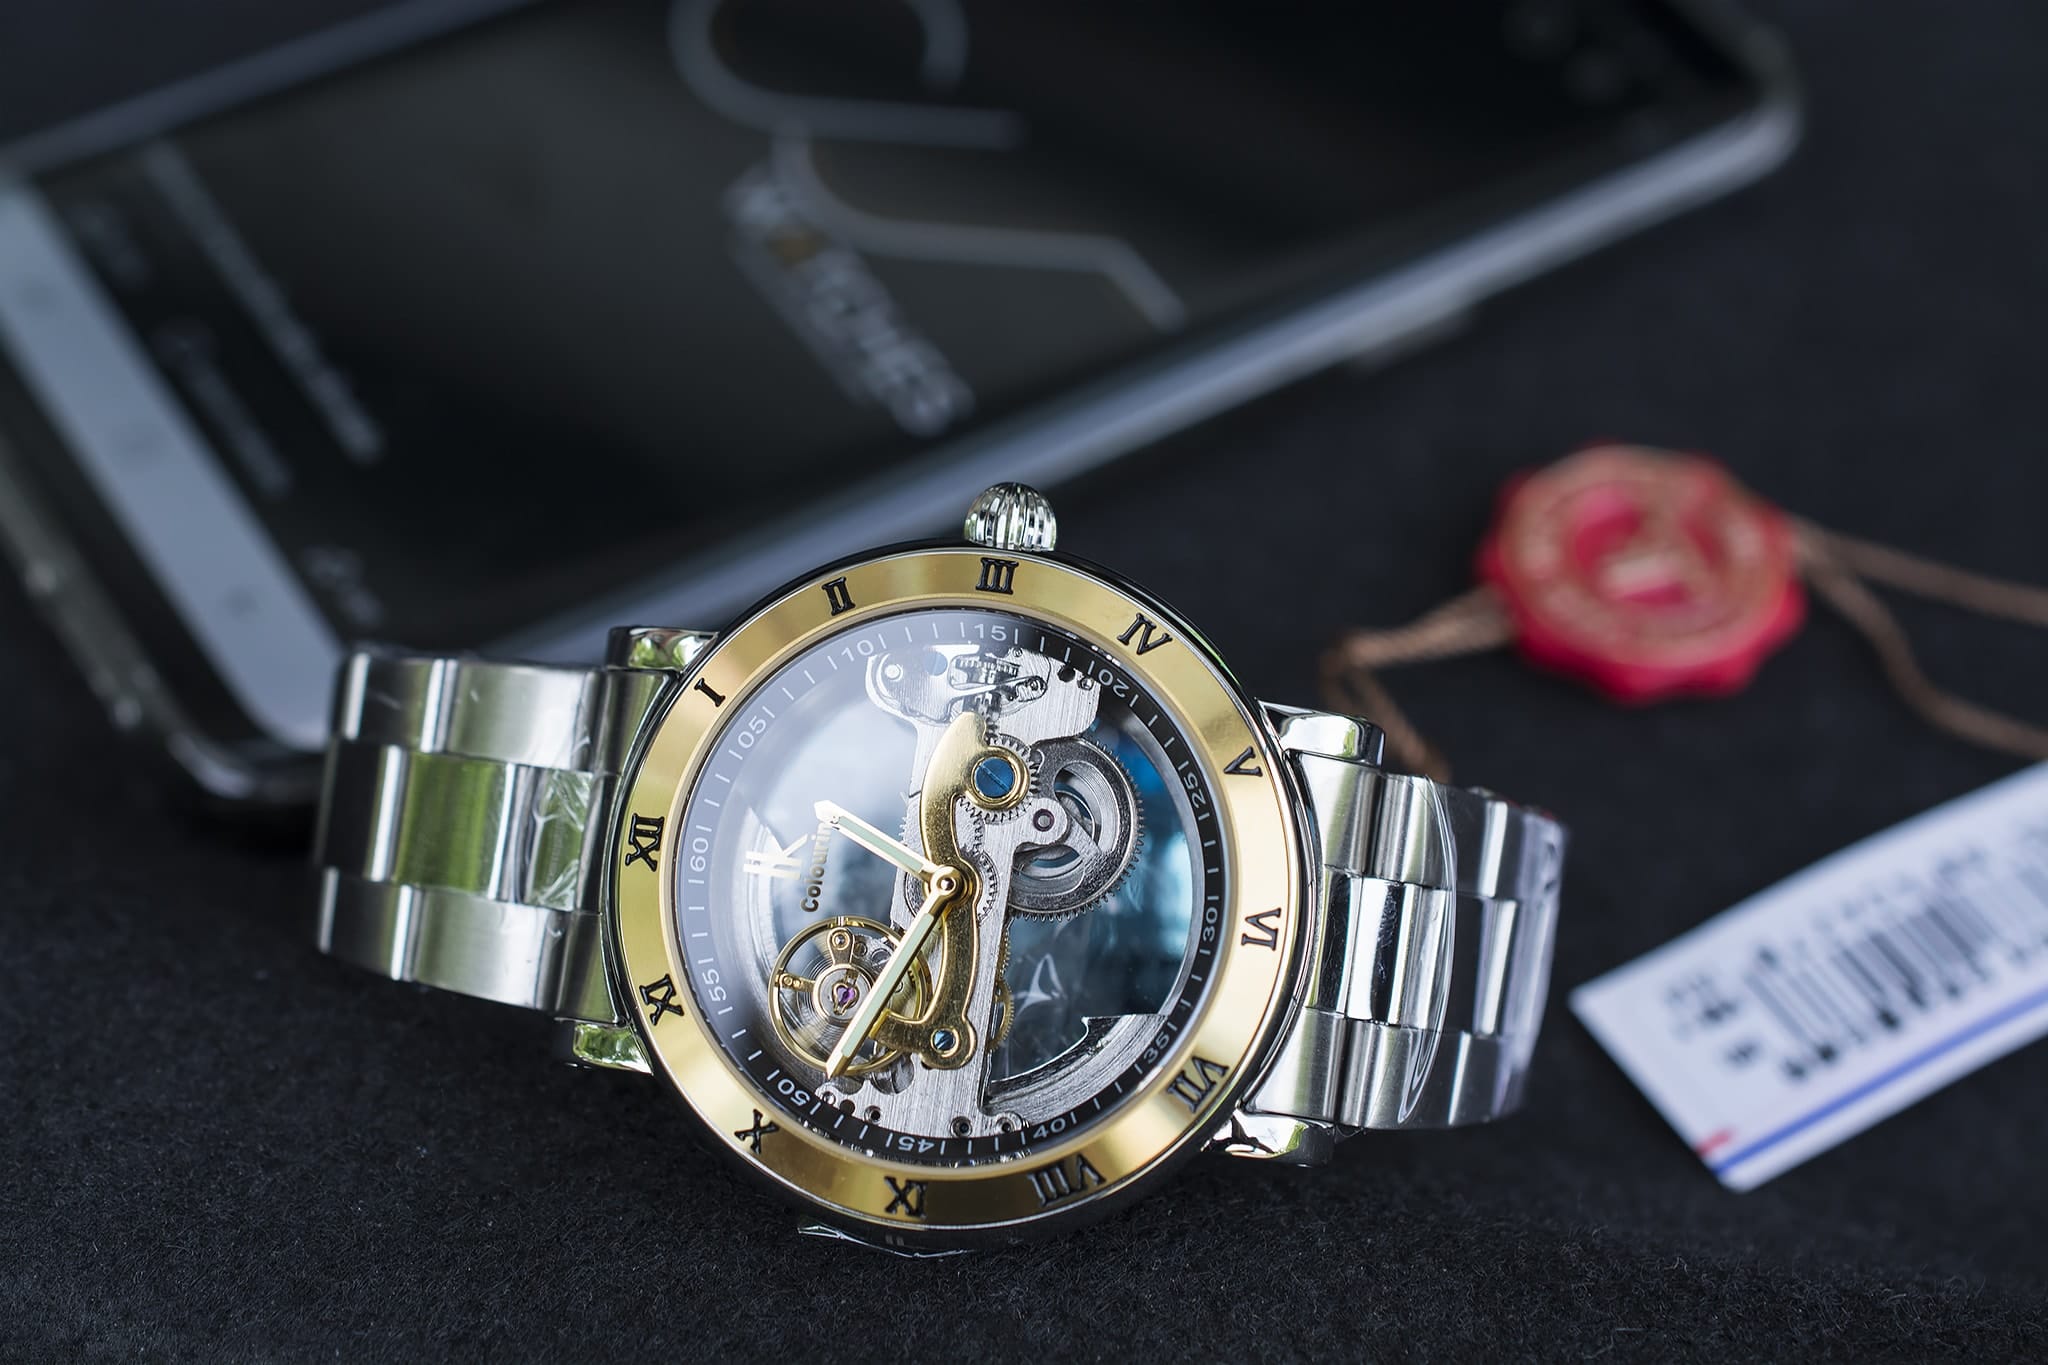 นาฬิกาข้อมือ IK Colouring สายสแตนเลส ขอบทอง รุ่น Perspective II